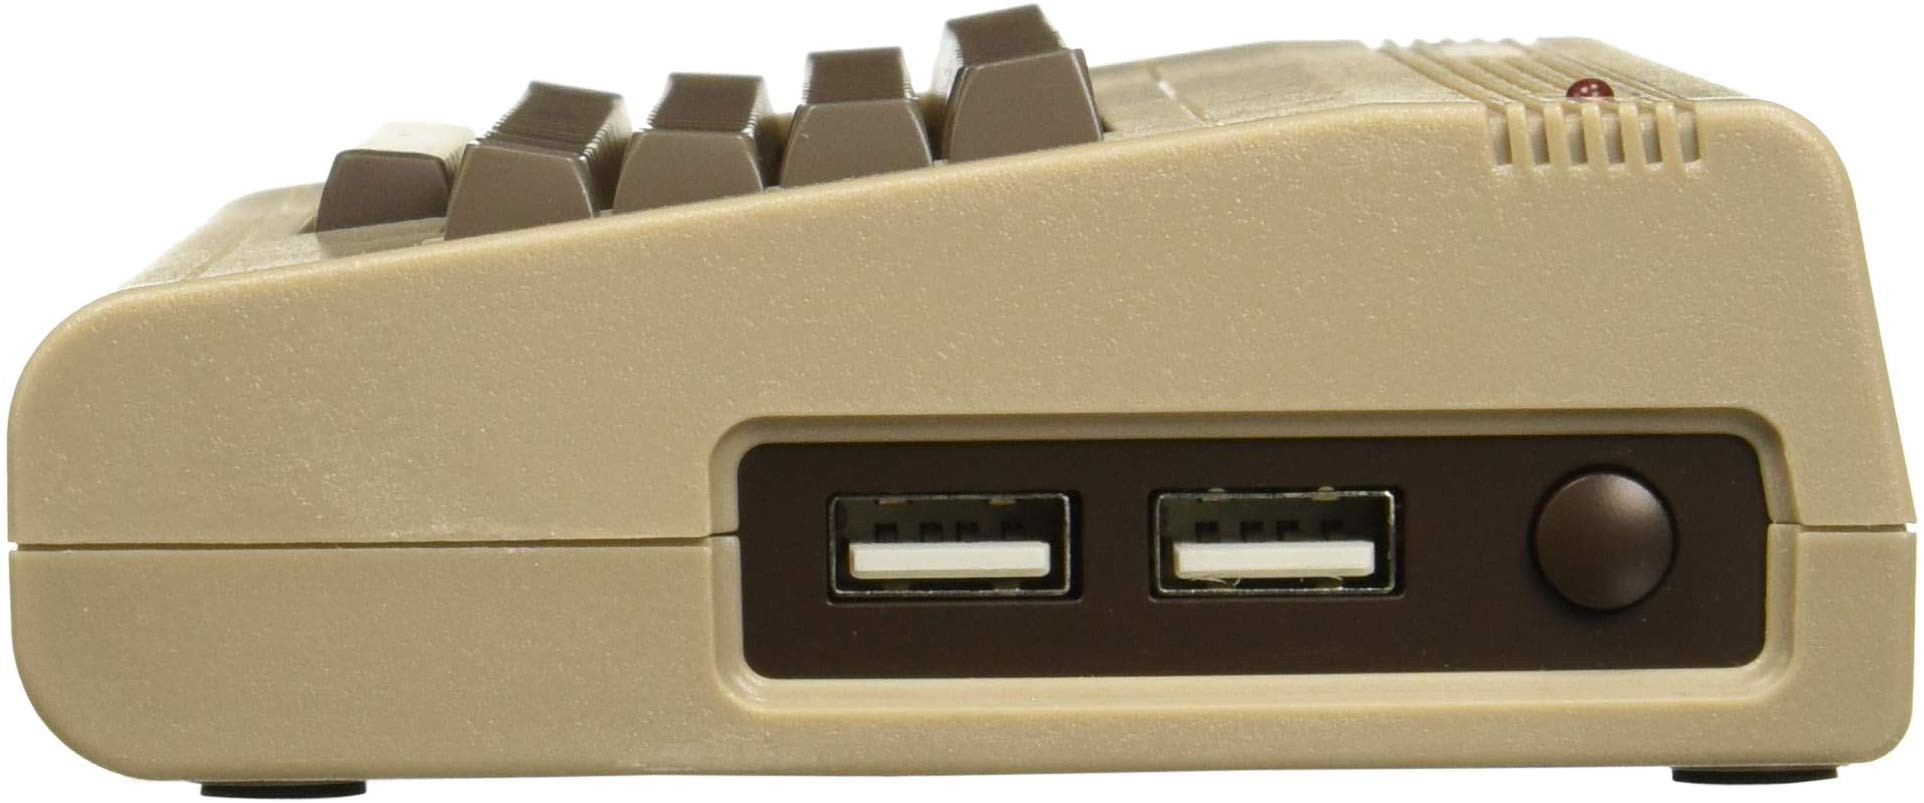 Commodore 64 Mini Retro PC RETRO console